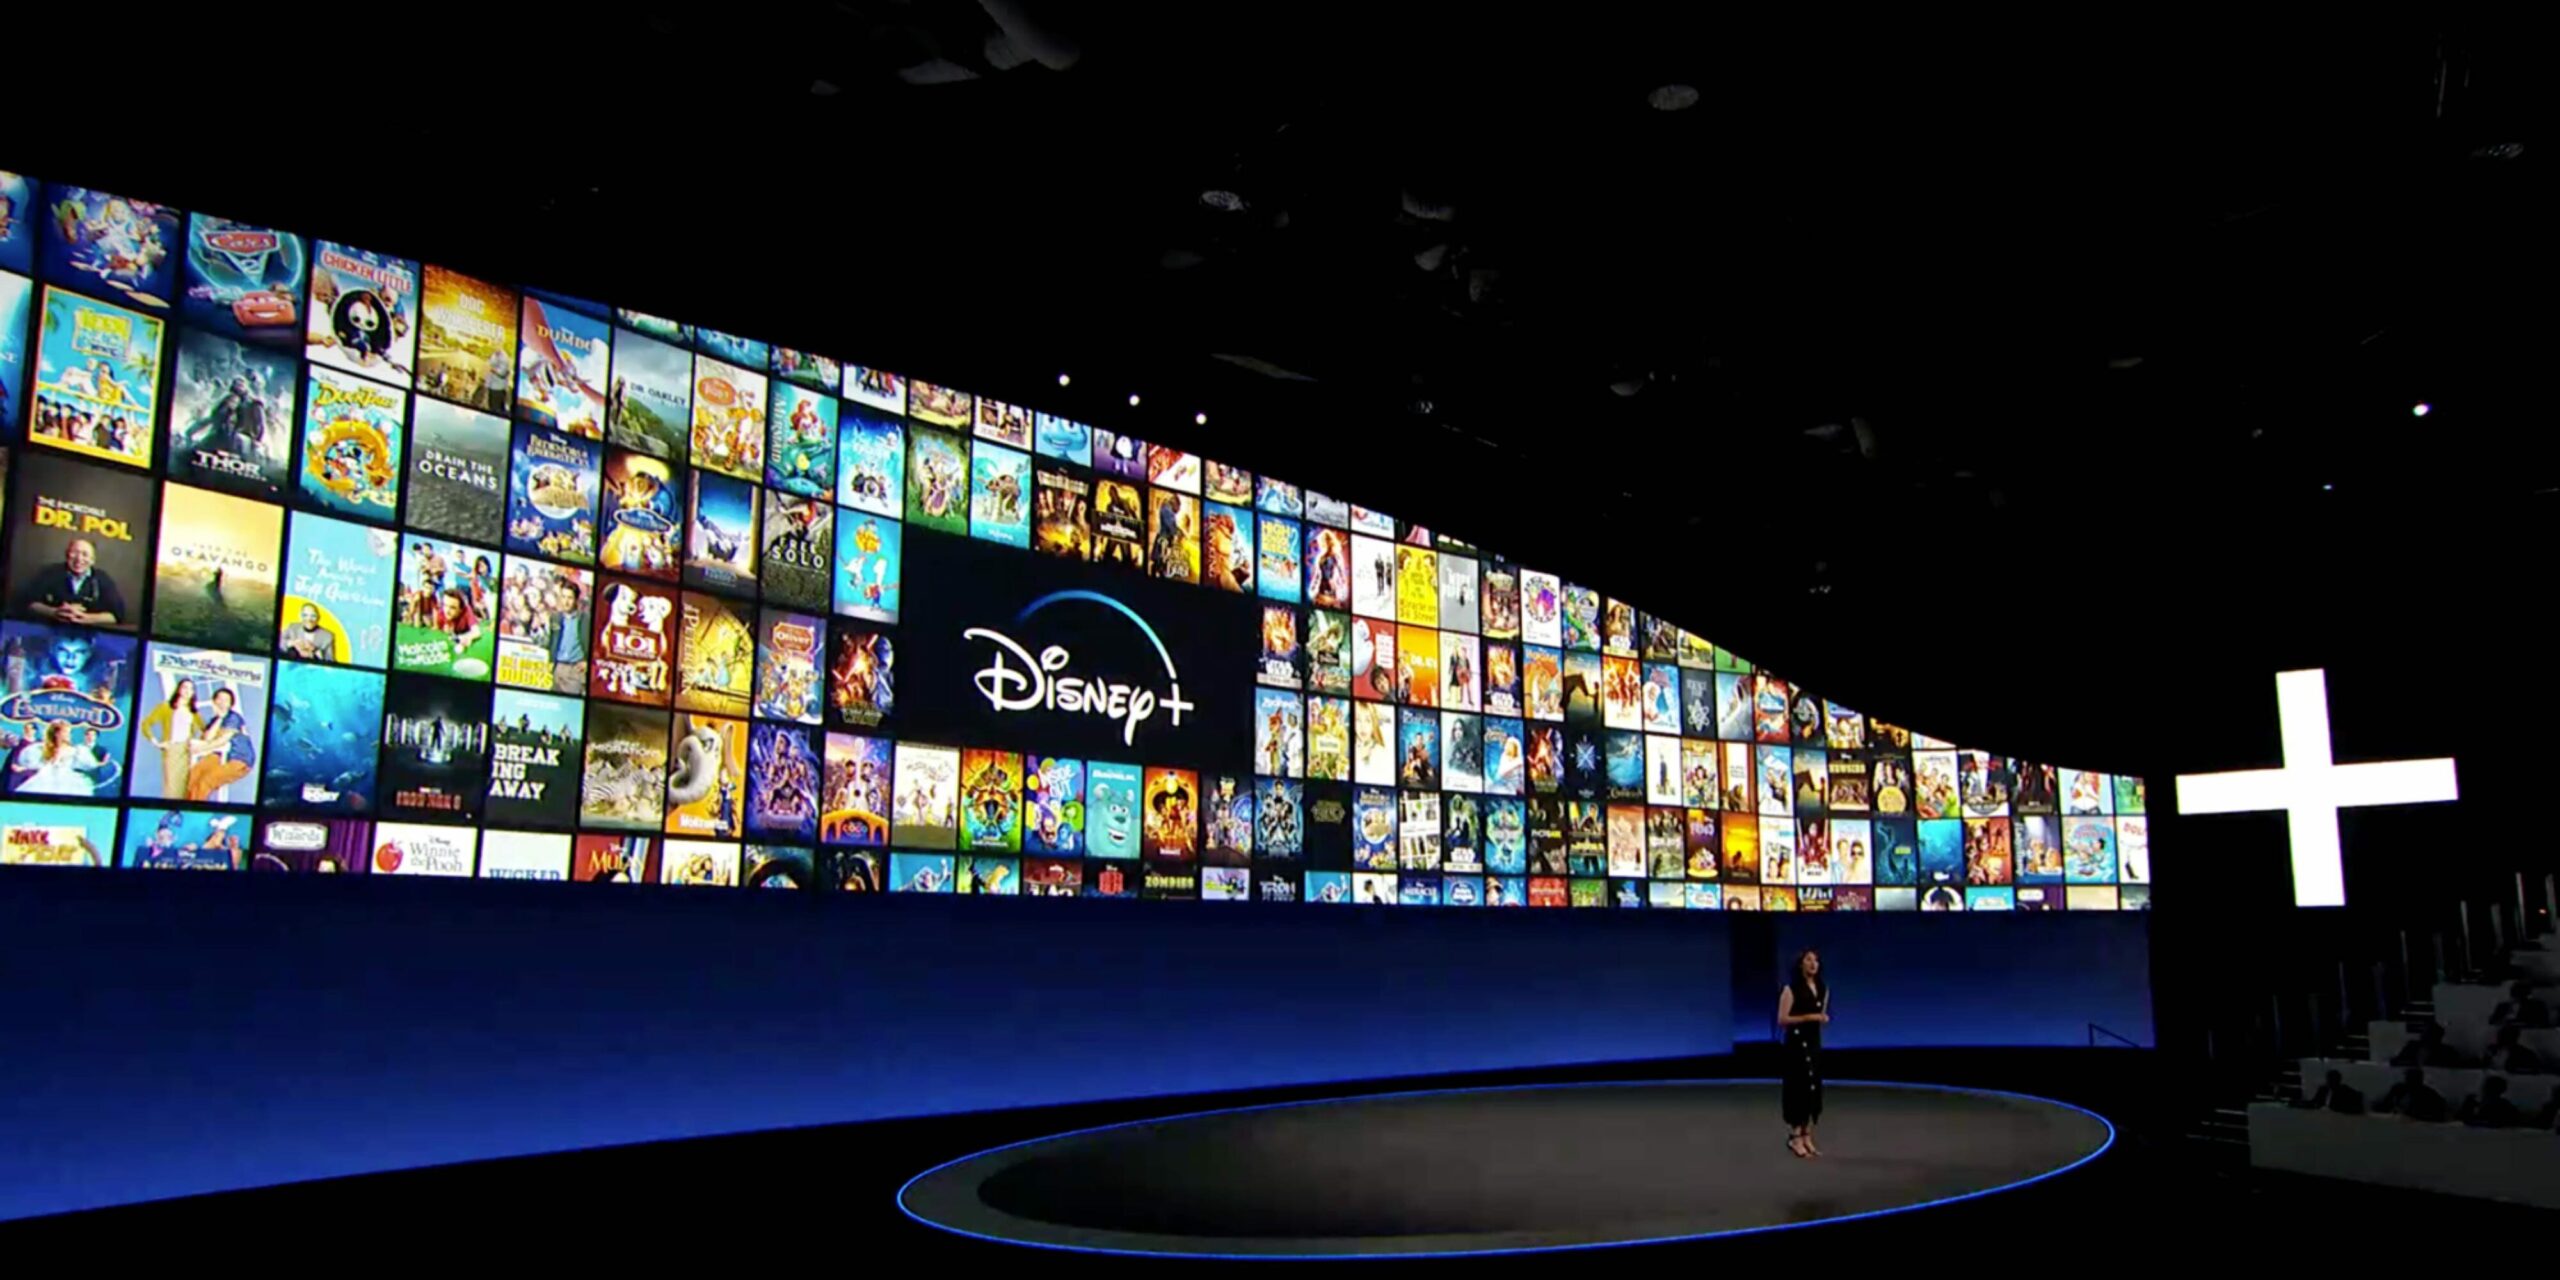 Disney раскрывает цену Disney + в Голландии и позволяет узнать, сколько он будет стоить в остальной части Европы.